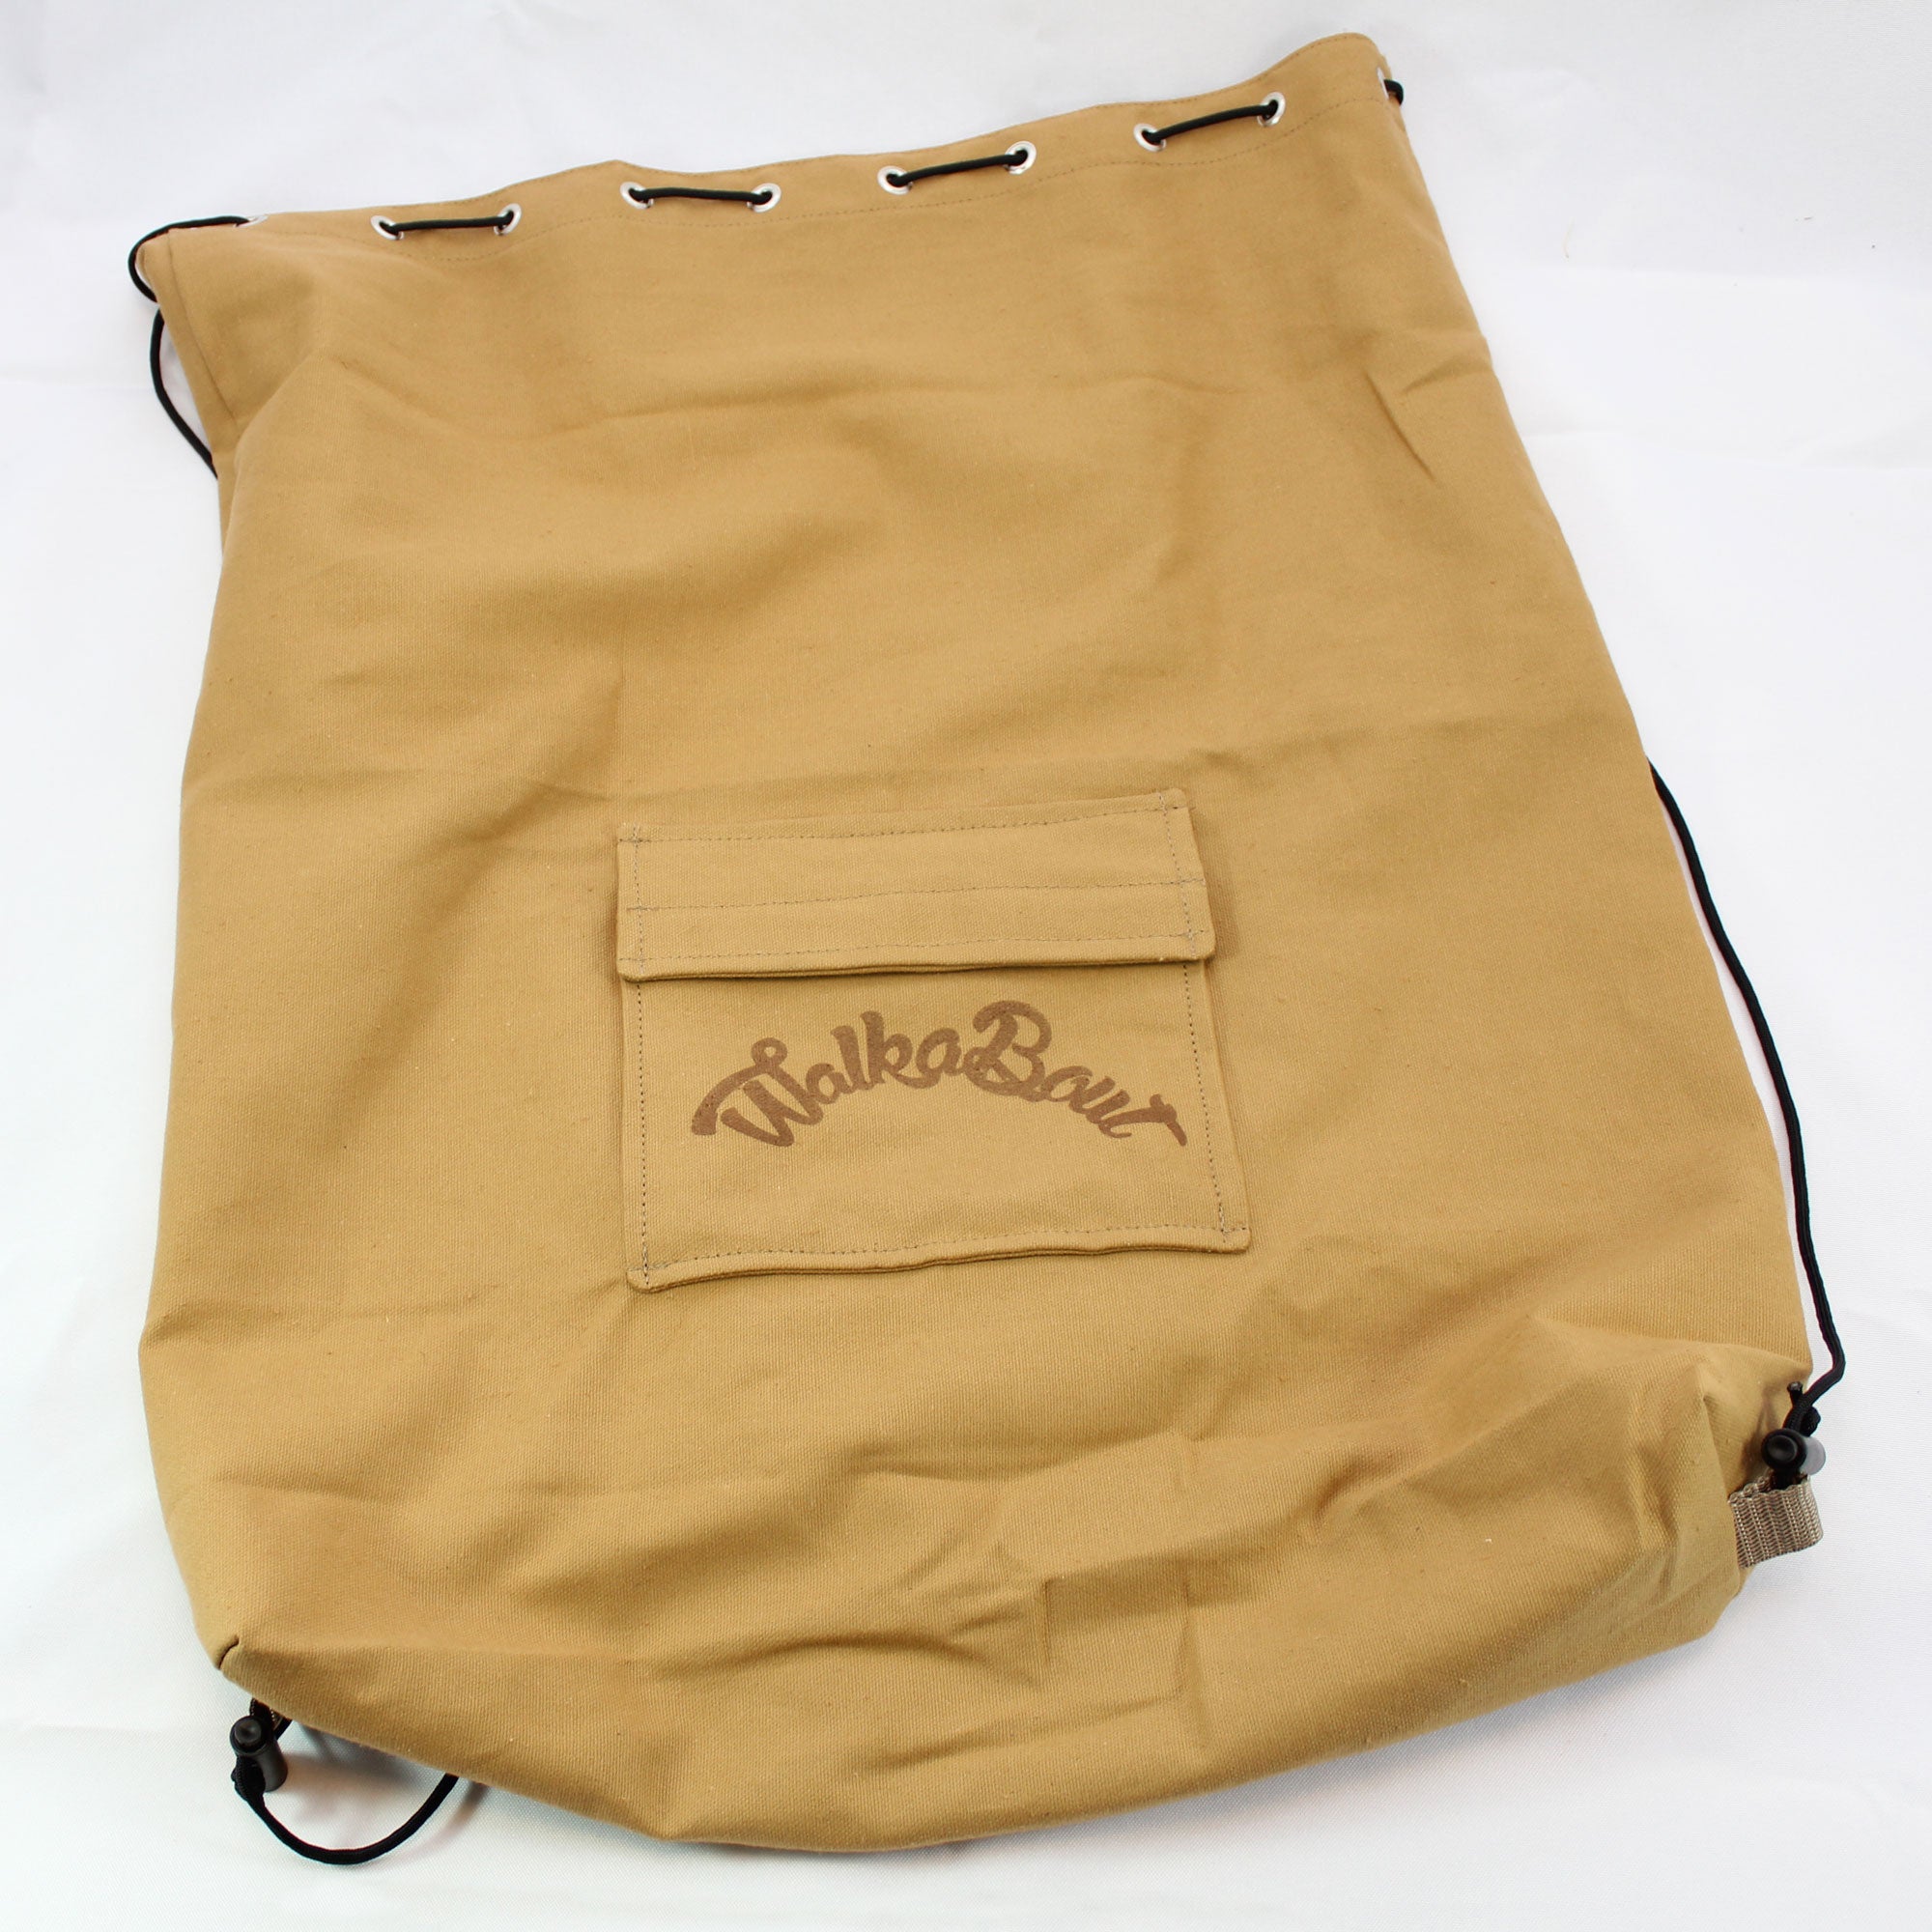 Drawstring Bag – WalkaBout Drum